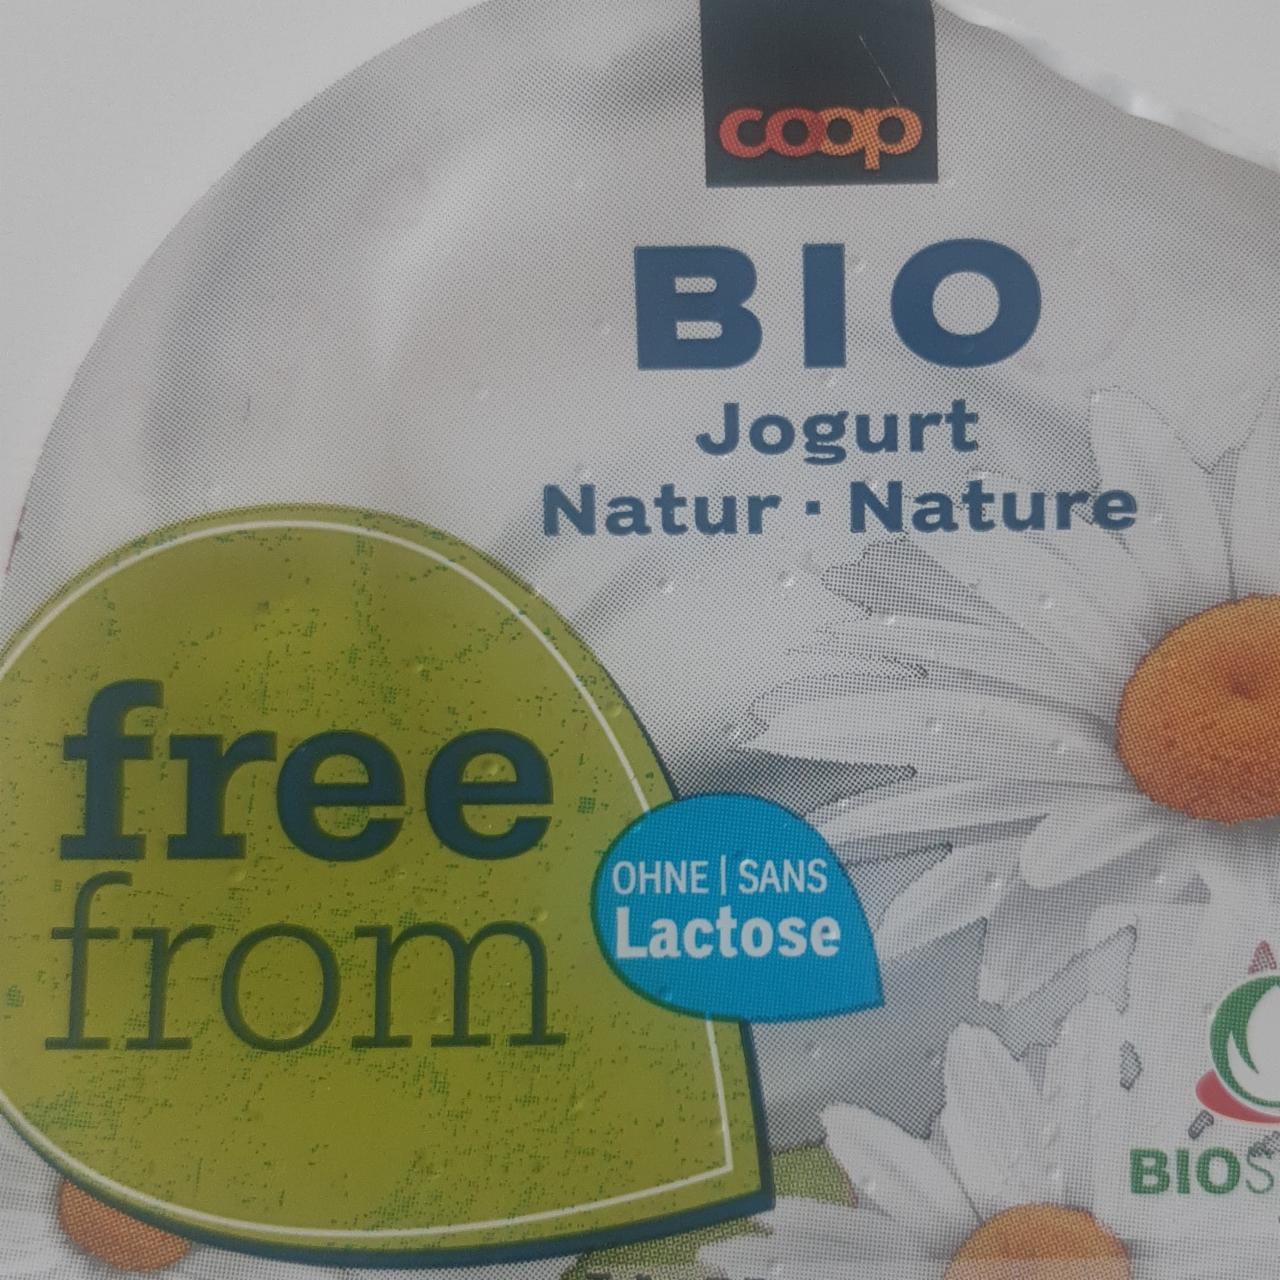 Fotografie - Bio jogurt Natur ohne Lactose Coop free from